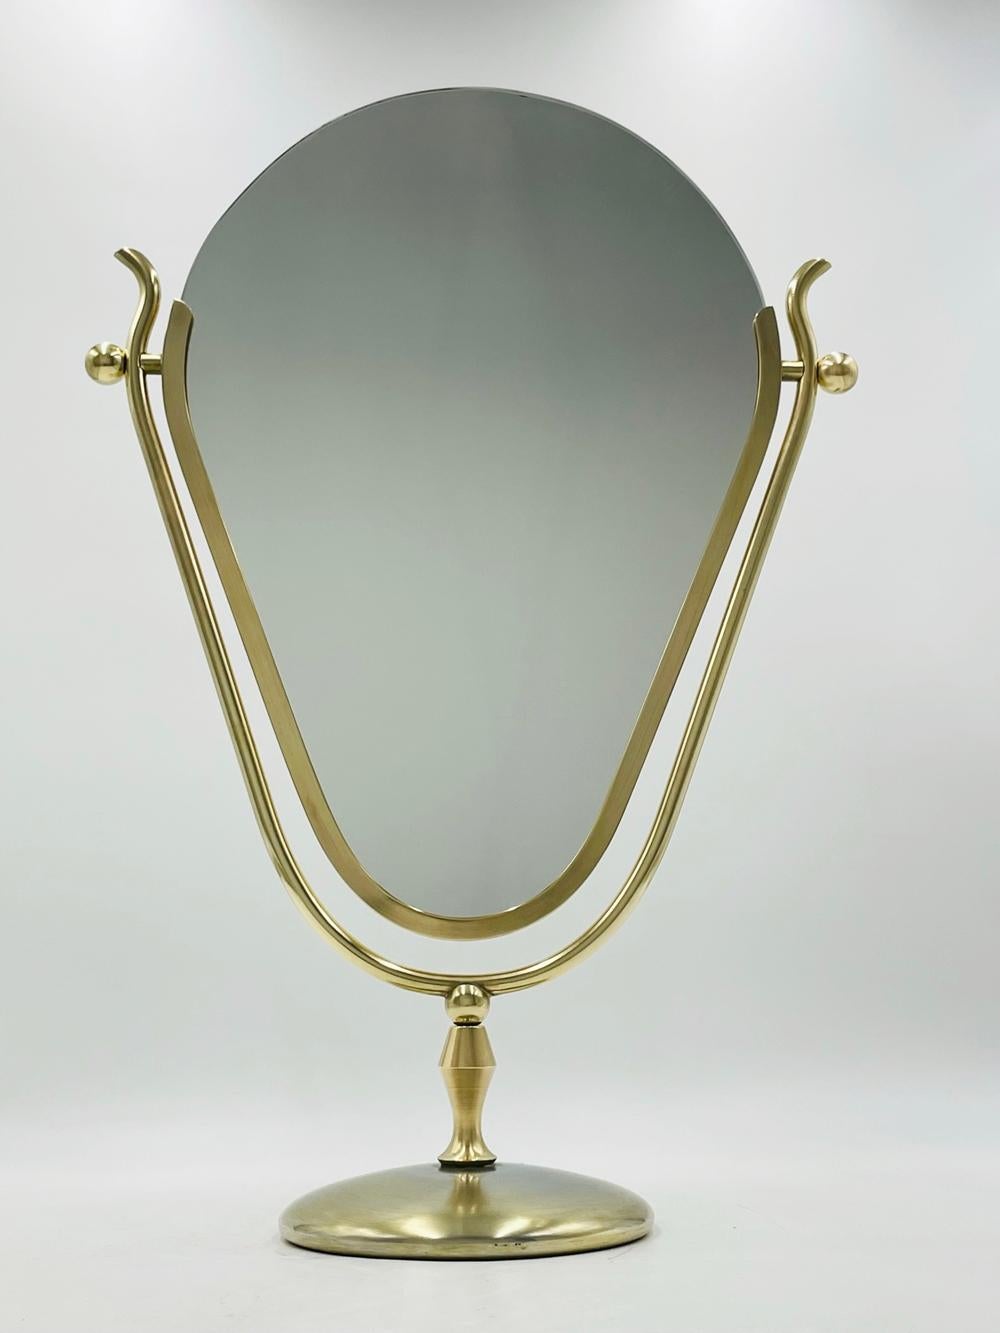 Der Dual Side Vanity Mirror in Brass von Charles Hollis Jones, Signed, ist eine atemberaubende Ergänzung für Ihren dekadenten Waschtisch. Mit viel Liebe zum Detail gefertigt, ist dieser faszinierende Spiegel ein wahres Zeugnis für die